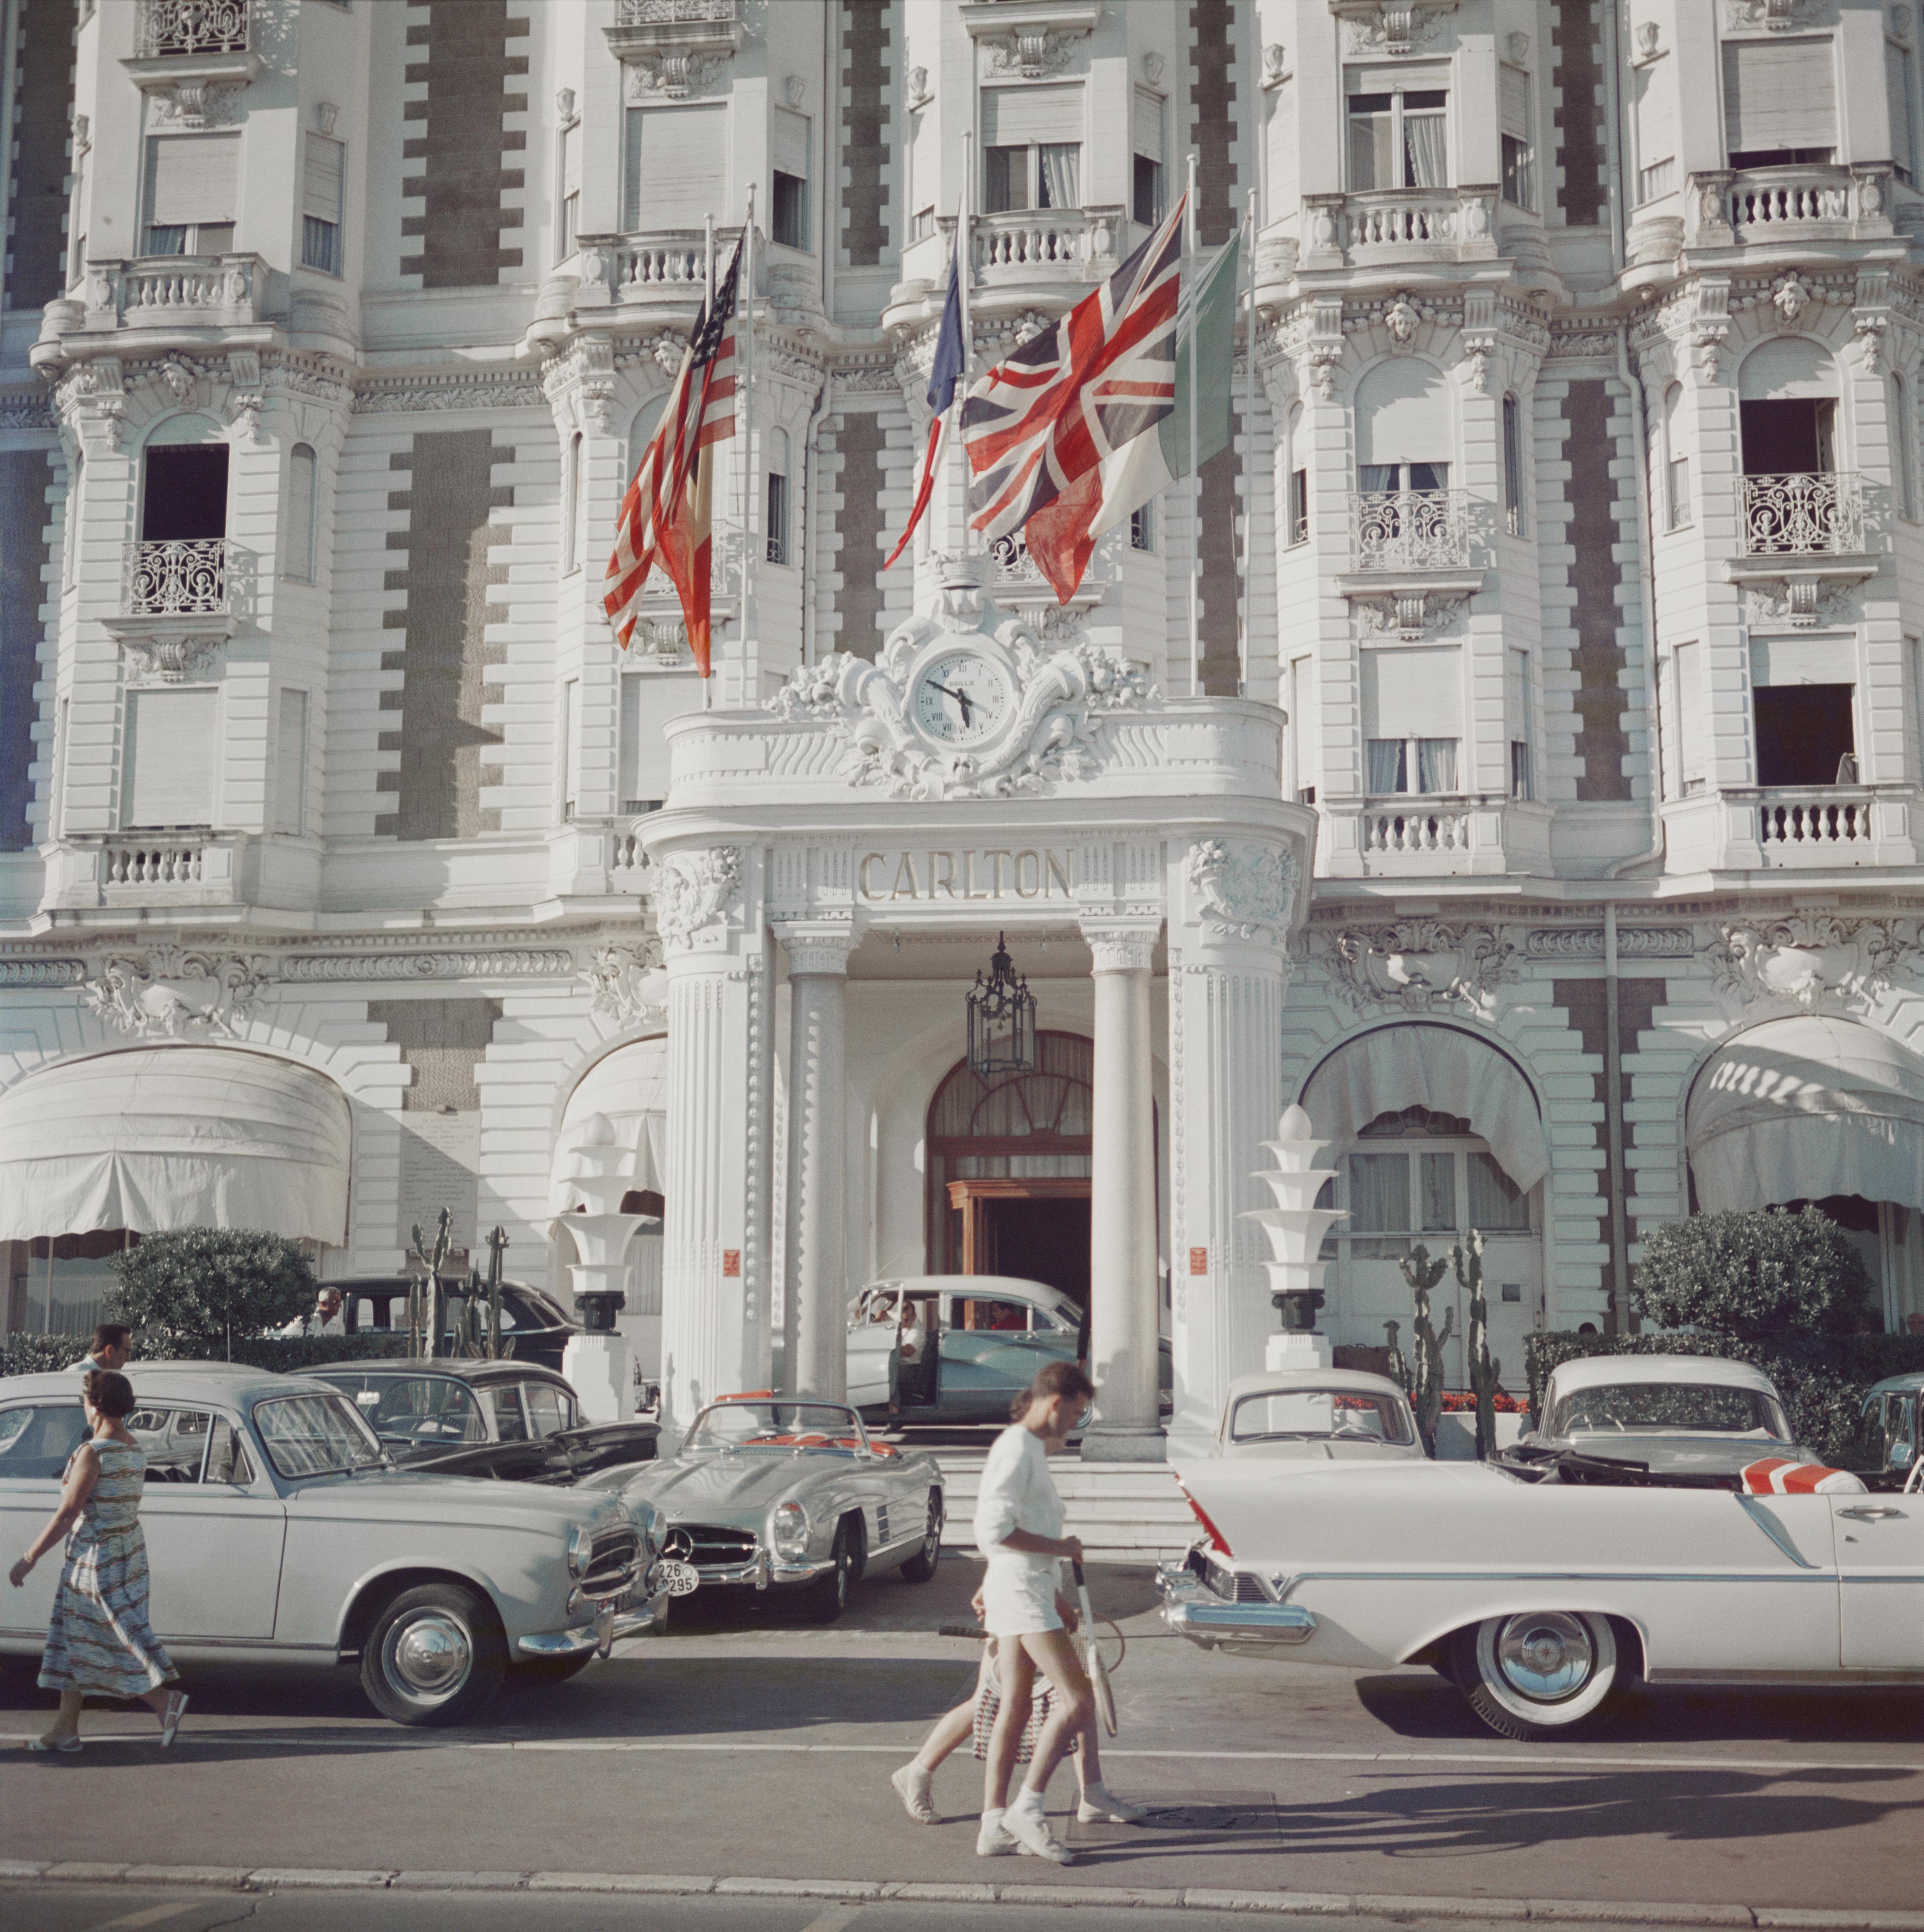 Der Eingang zum Carlton Hotel, Cannes, Frankreich, 1958. 

Schlanke Aarons
Hotel Carlton
Lambda-Druck
4 Größen verfügbar
Slim Aarons Estate Edition
Später gedruckt.

60 x 60 Zoll
$5100

48 x 48 Zoll
$4500

40 x 40 Zoll
$3950

30 x 30 Zoll
$3350

20